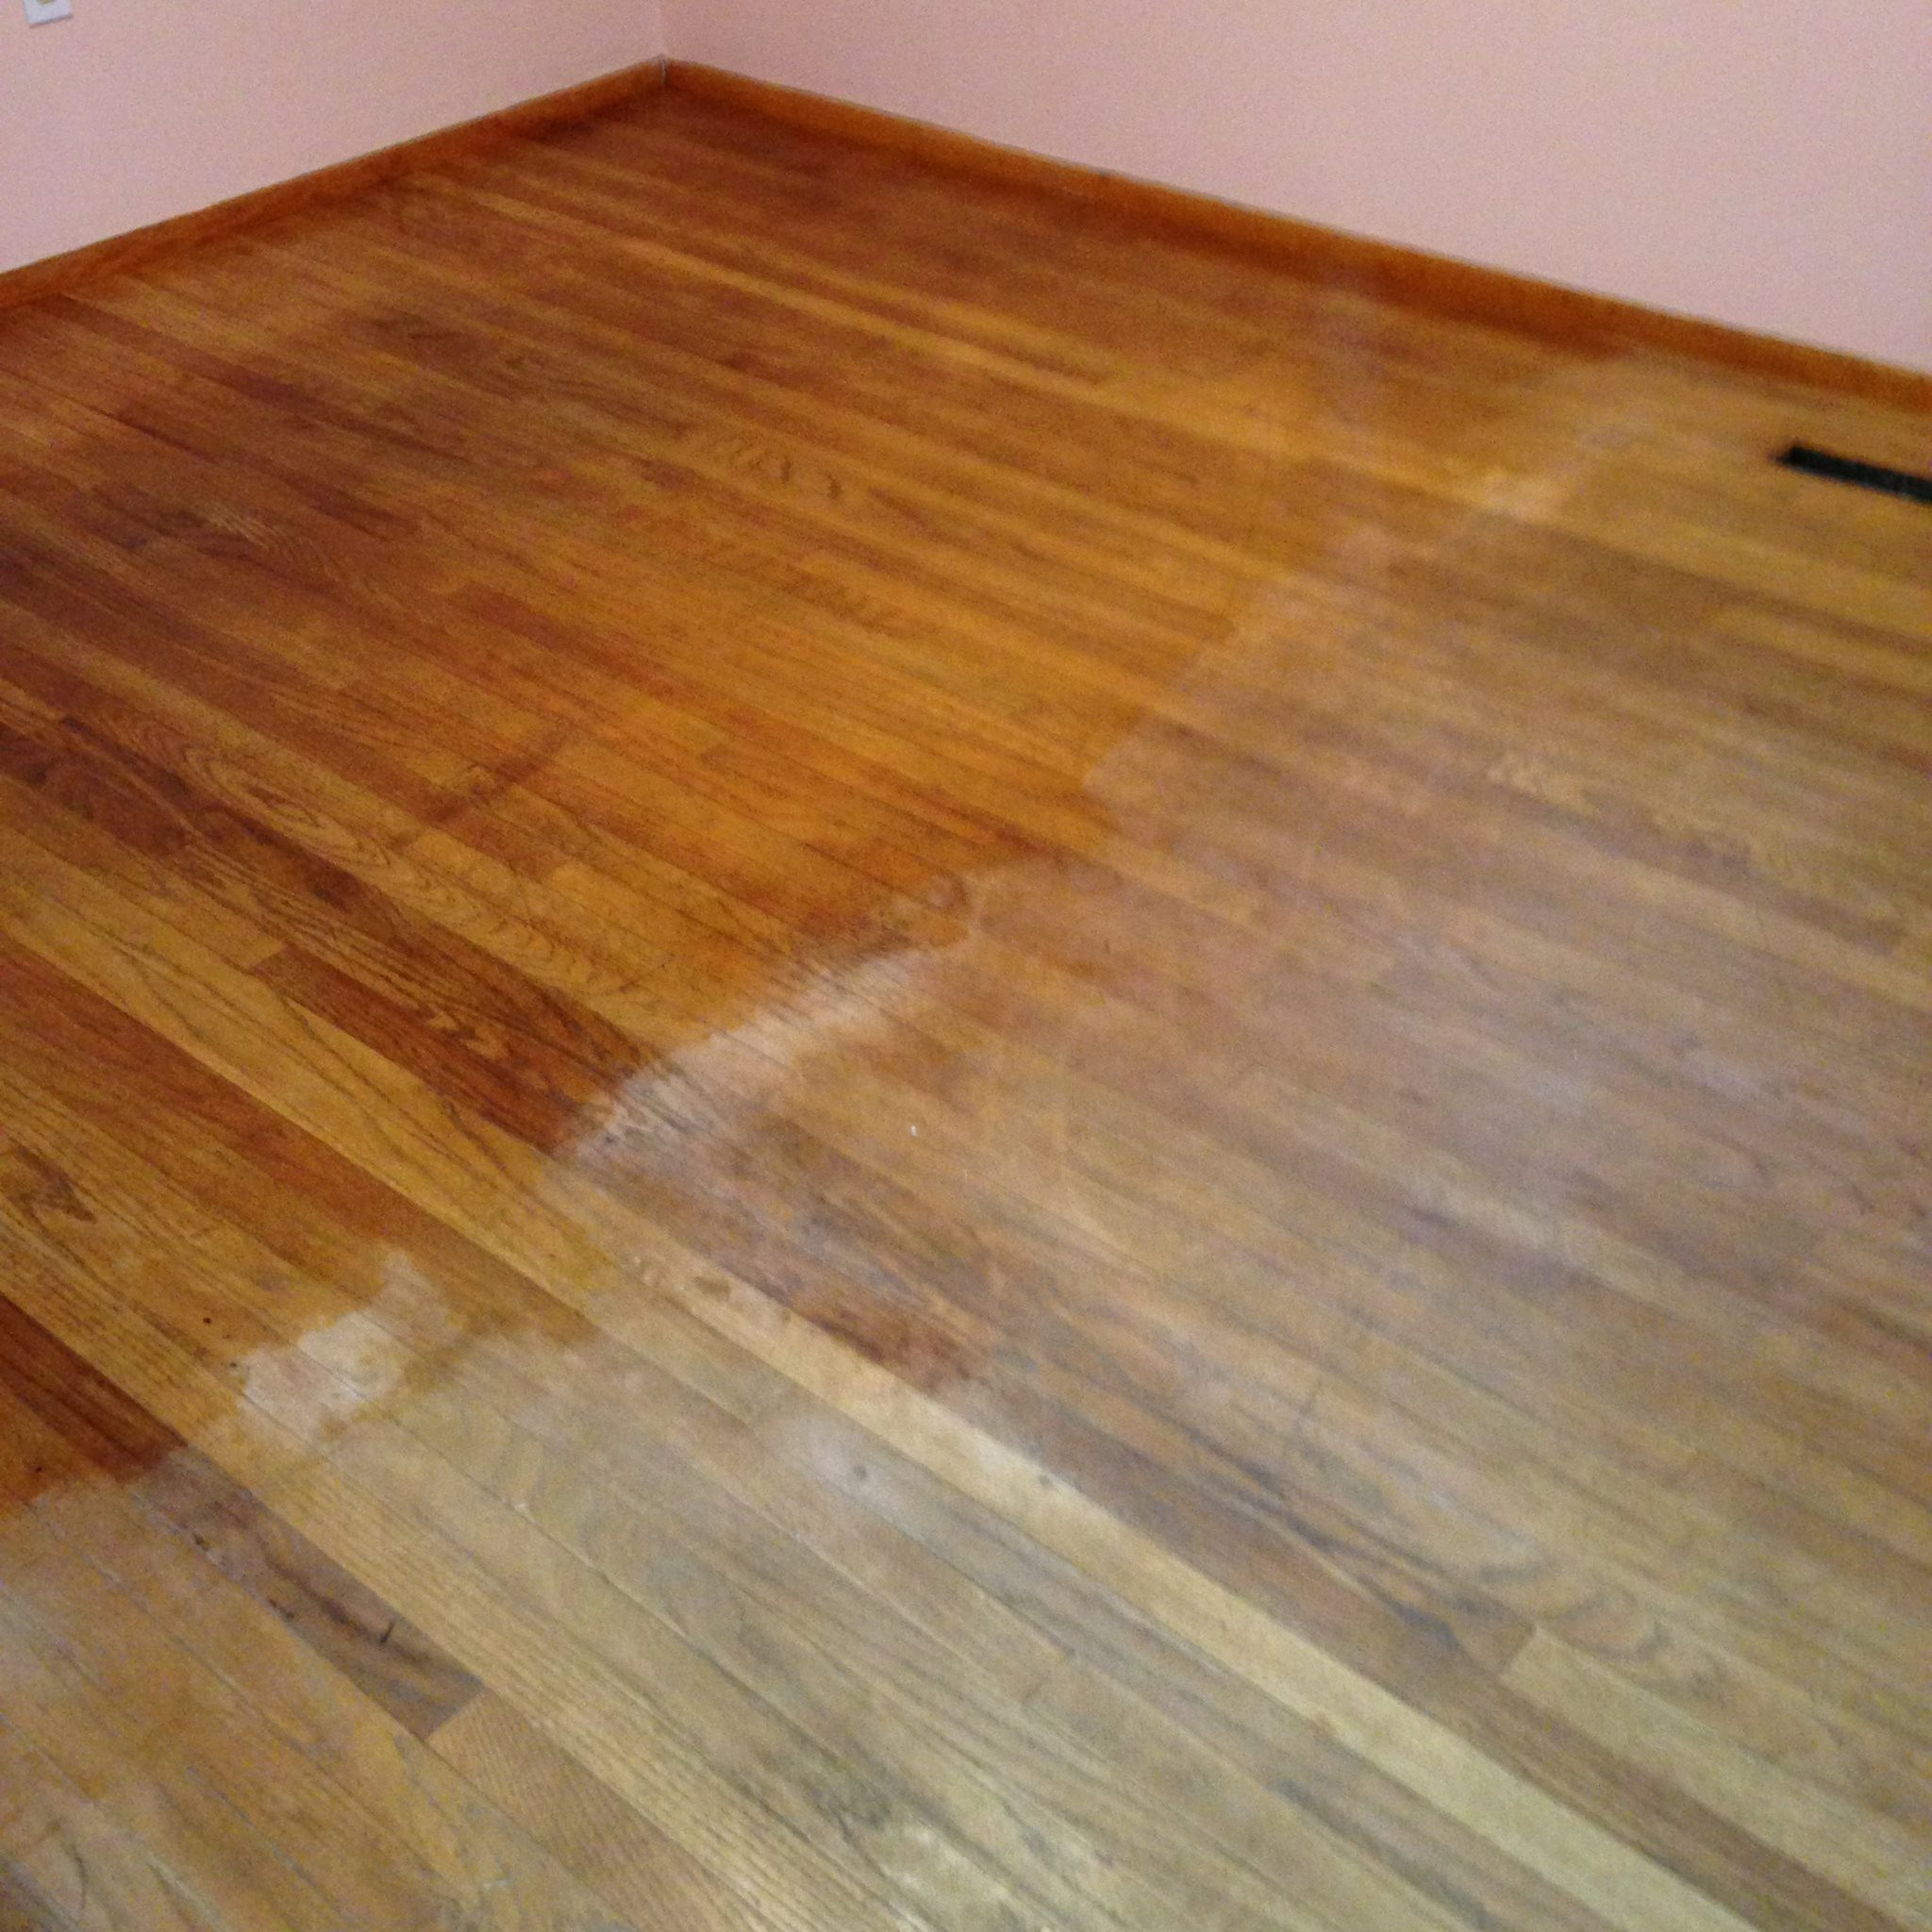 hardwood floor furniture protectors of 15 wood floor hacks every homeowner needs to know intended for wood floor hacks 15